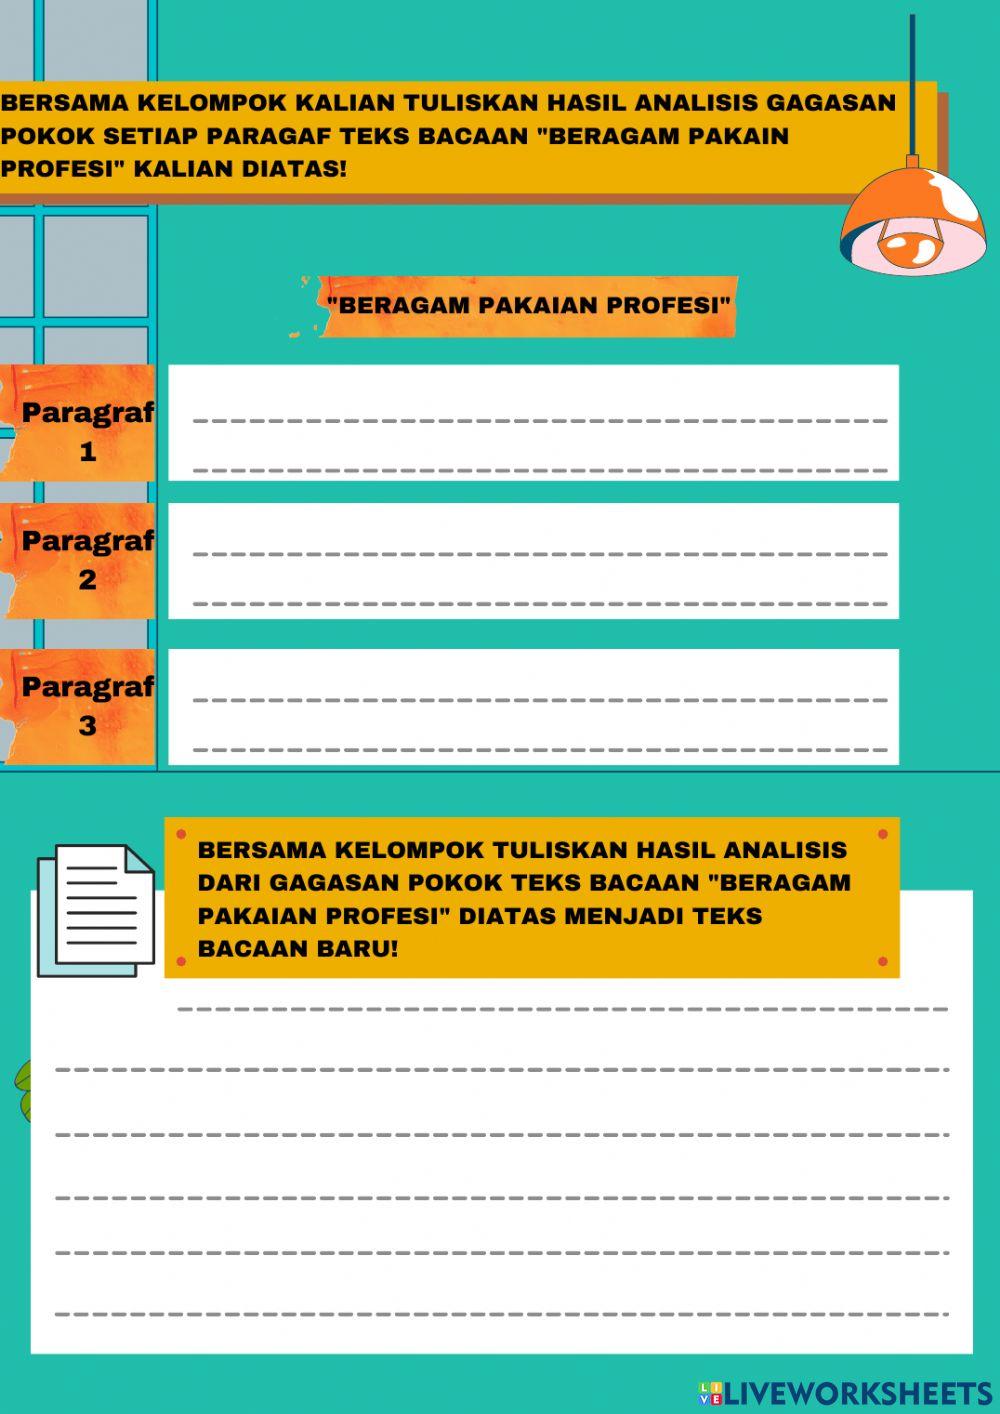 LKPD Bahasa Indonesia Tema 7 Subetema 2 Pembelajaran 6